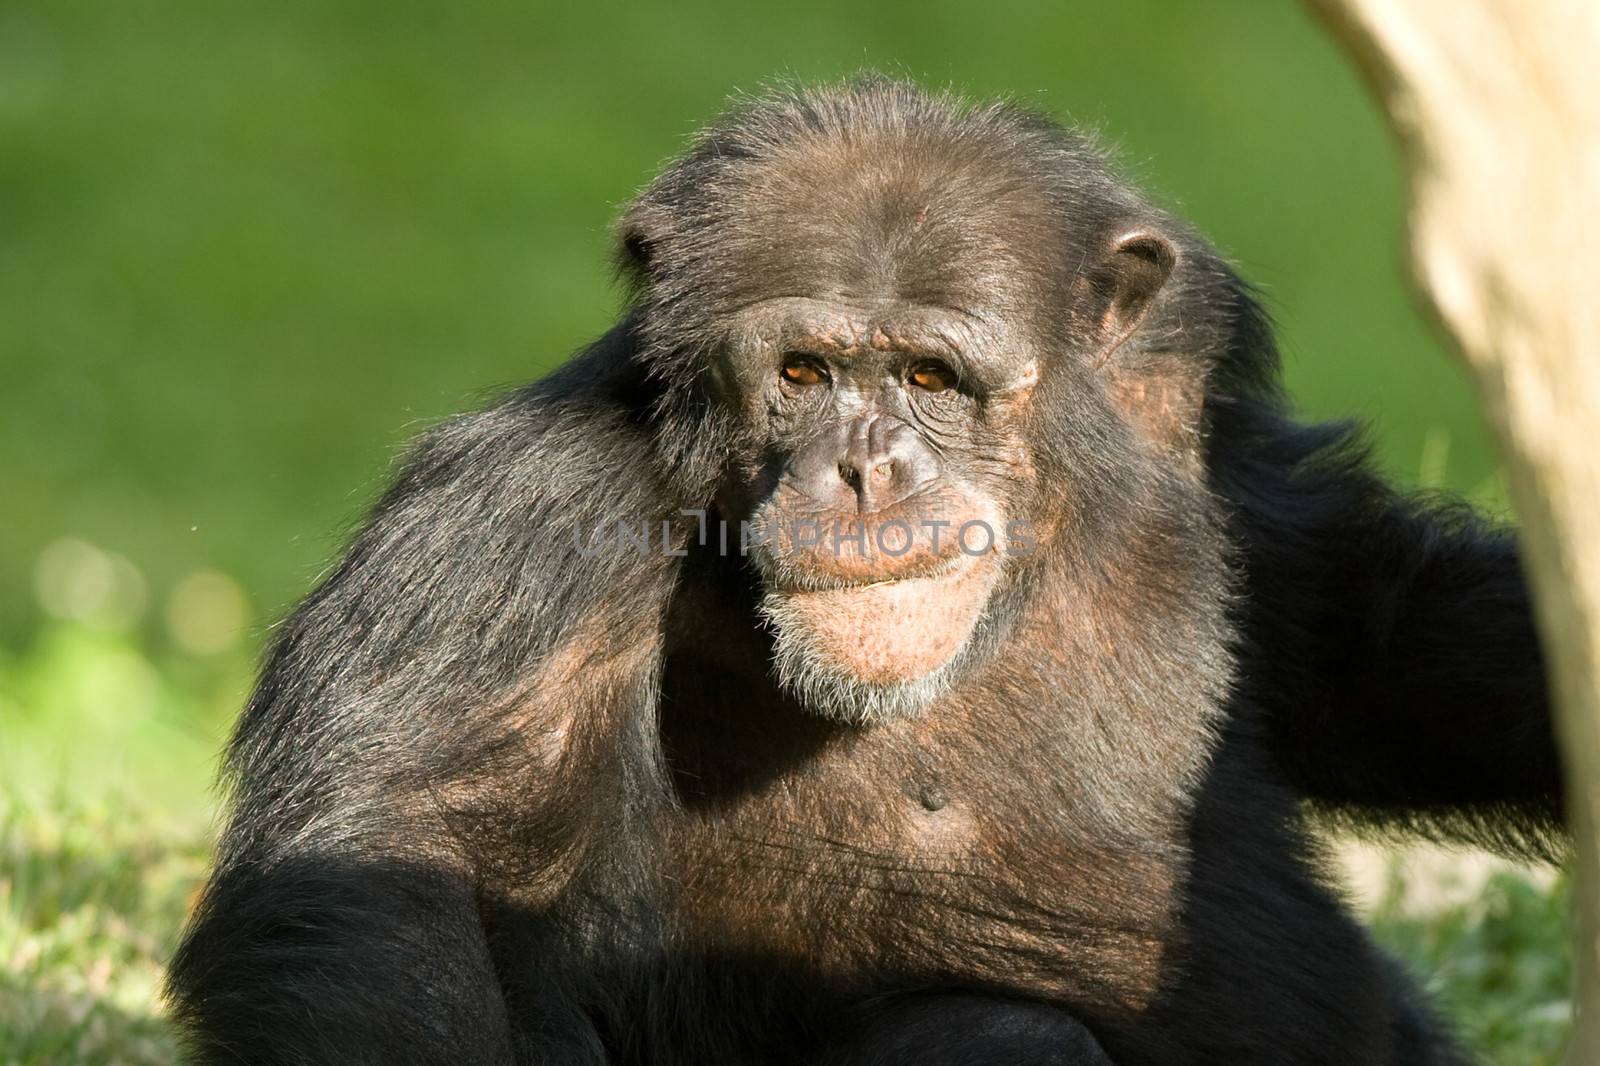 Chimpanzee by CelsoDiniz